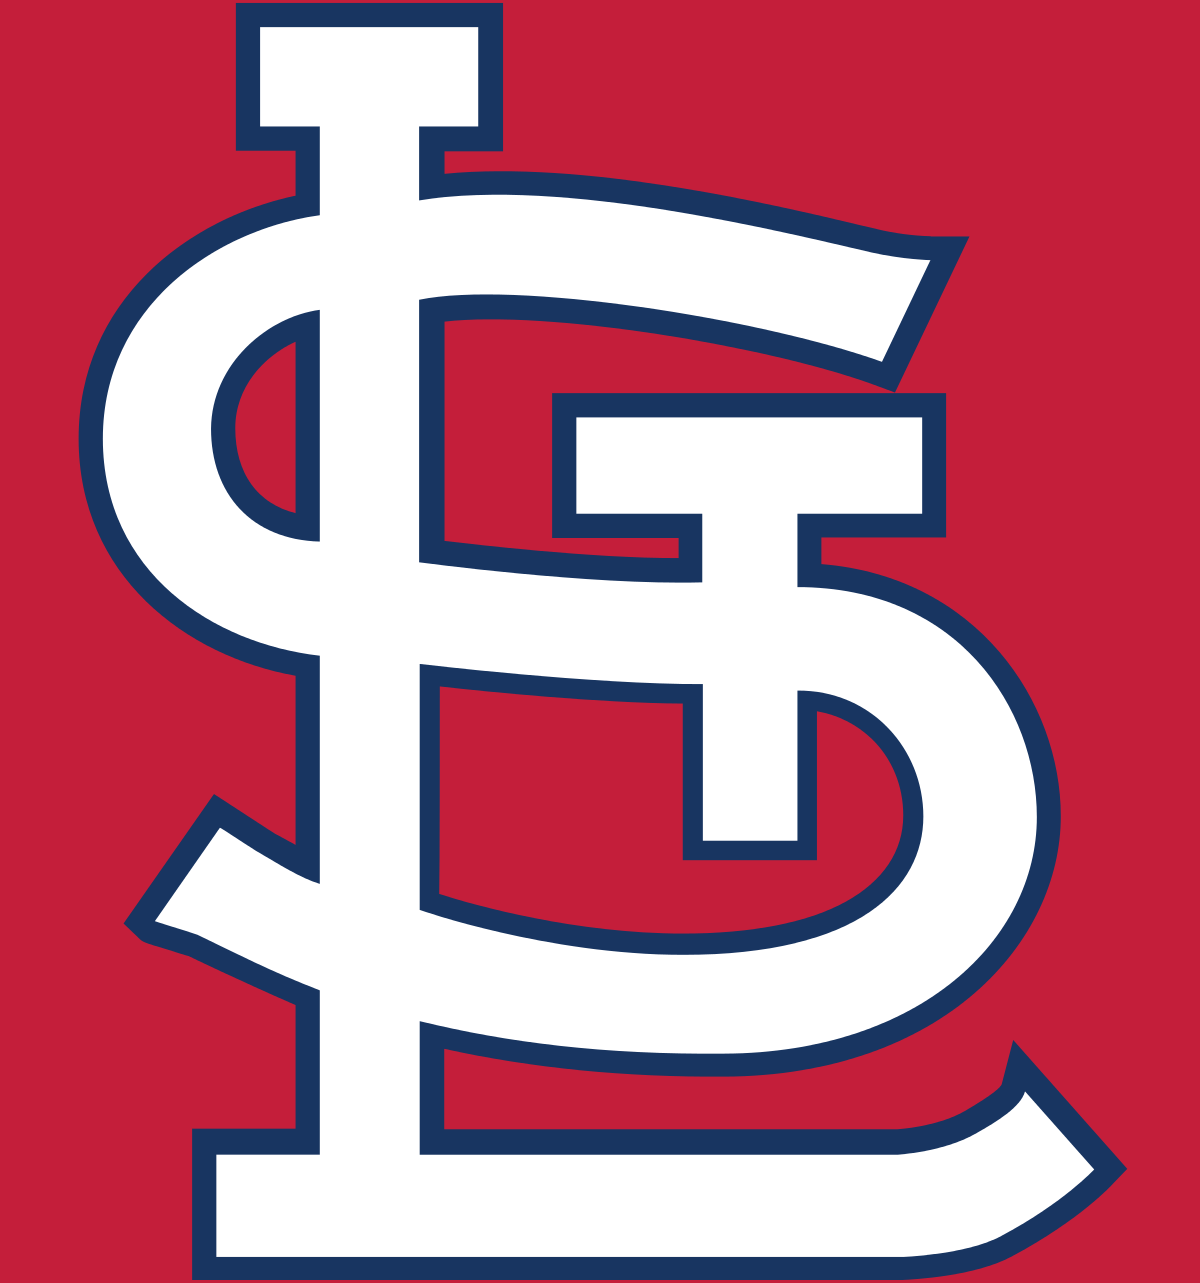 Cardinals Baseball Logo - St. Louis Cardinals season